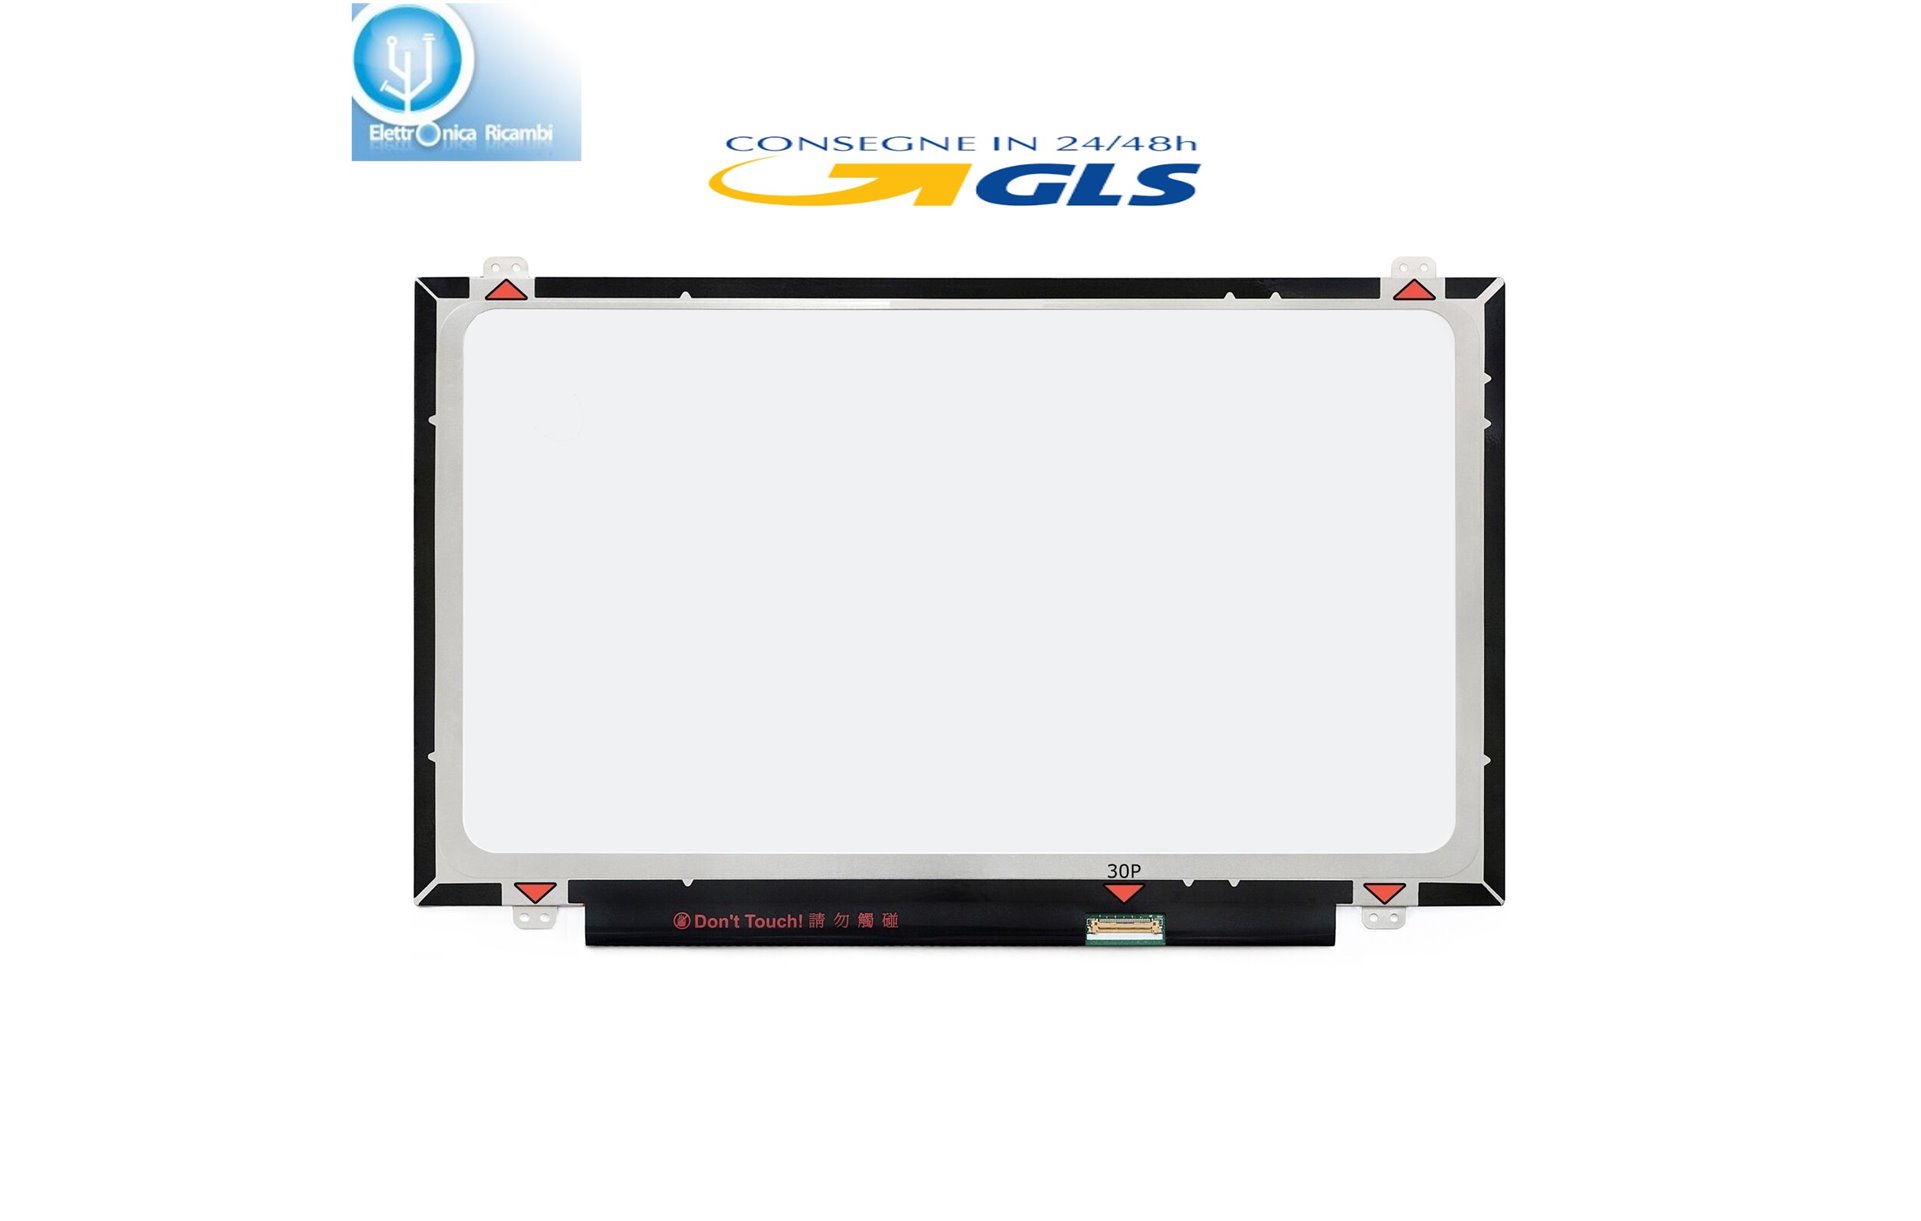 Display LCD Dell VOSTRO 5459 SERIES Schermo 14.0 LED SLIM 30 pin HD (1366x768)